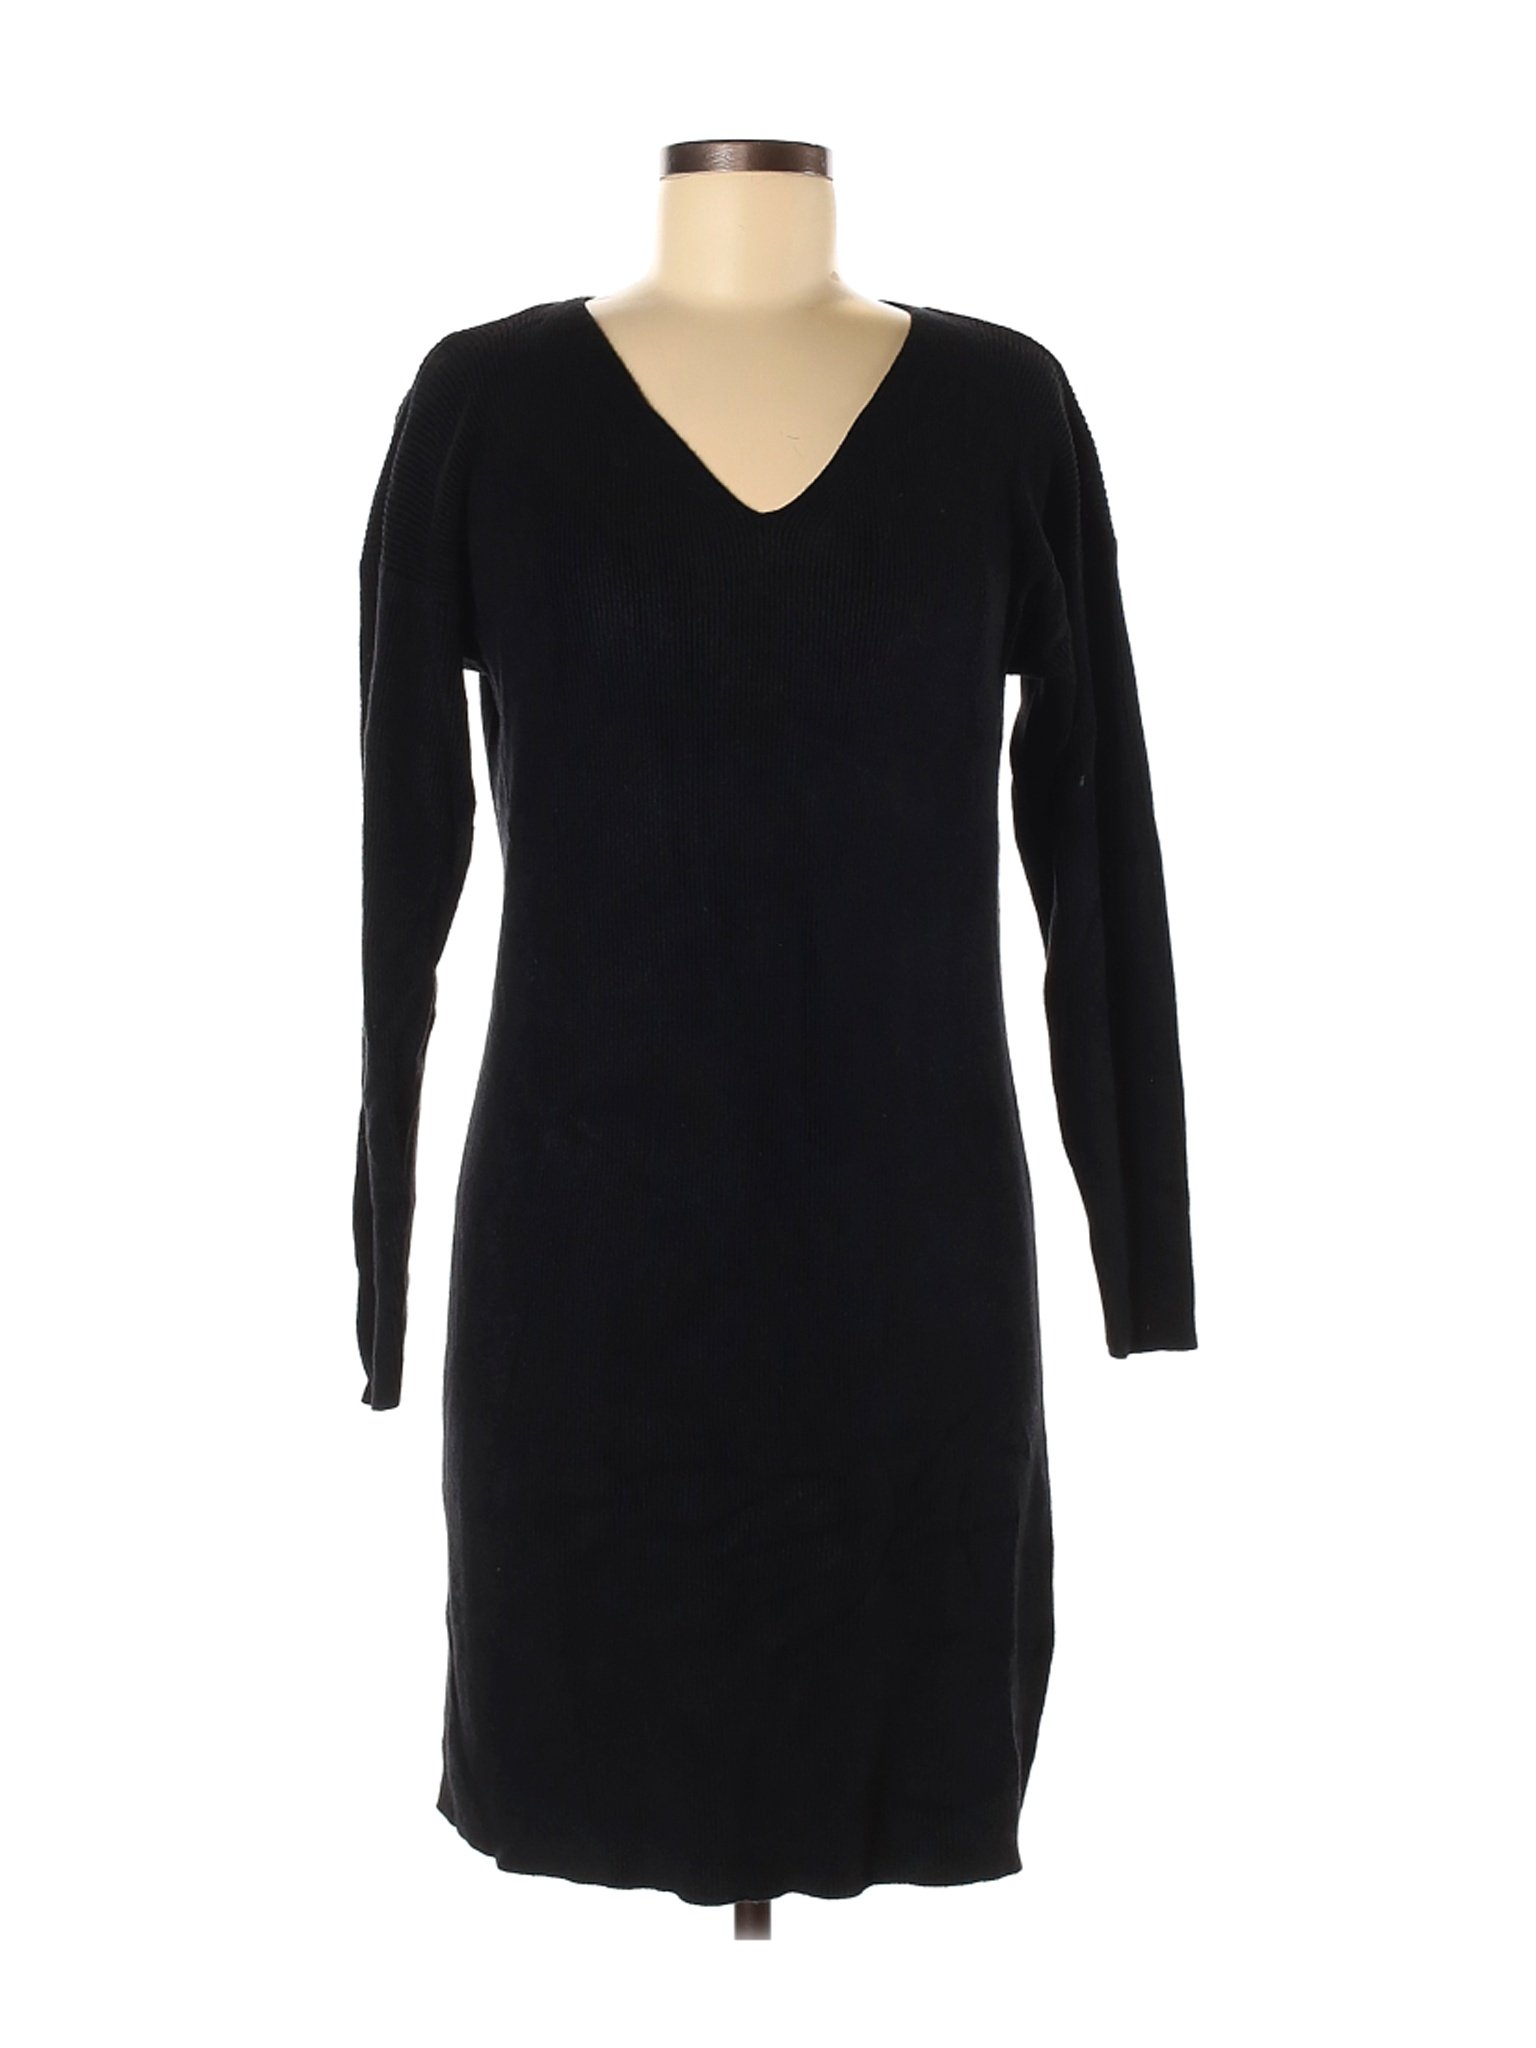 Linda Allard Ellen Tracy Women Black Casual Dress M | eBay